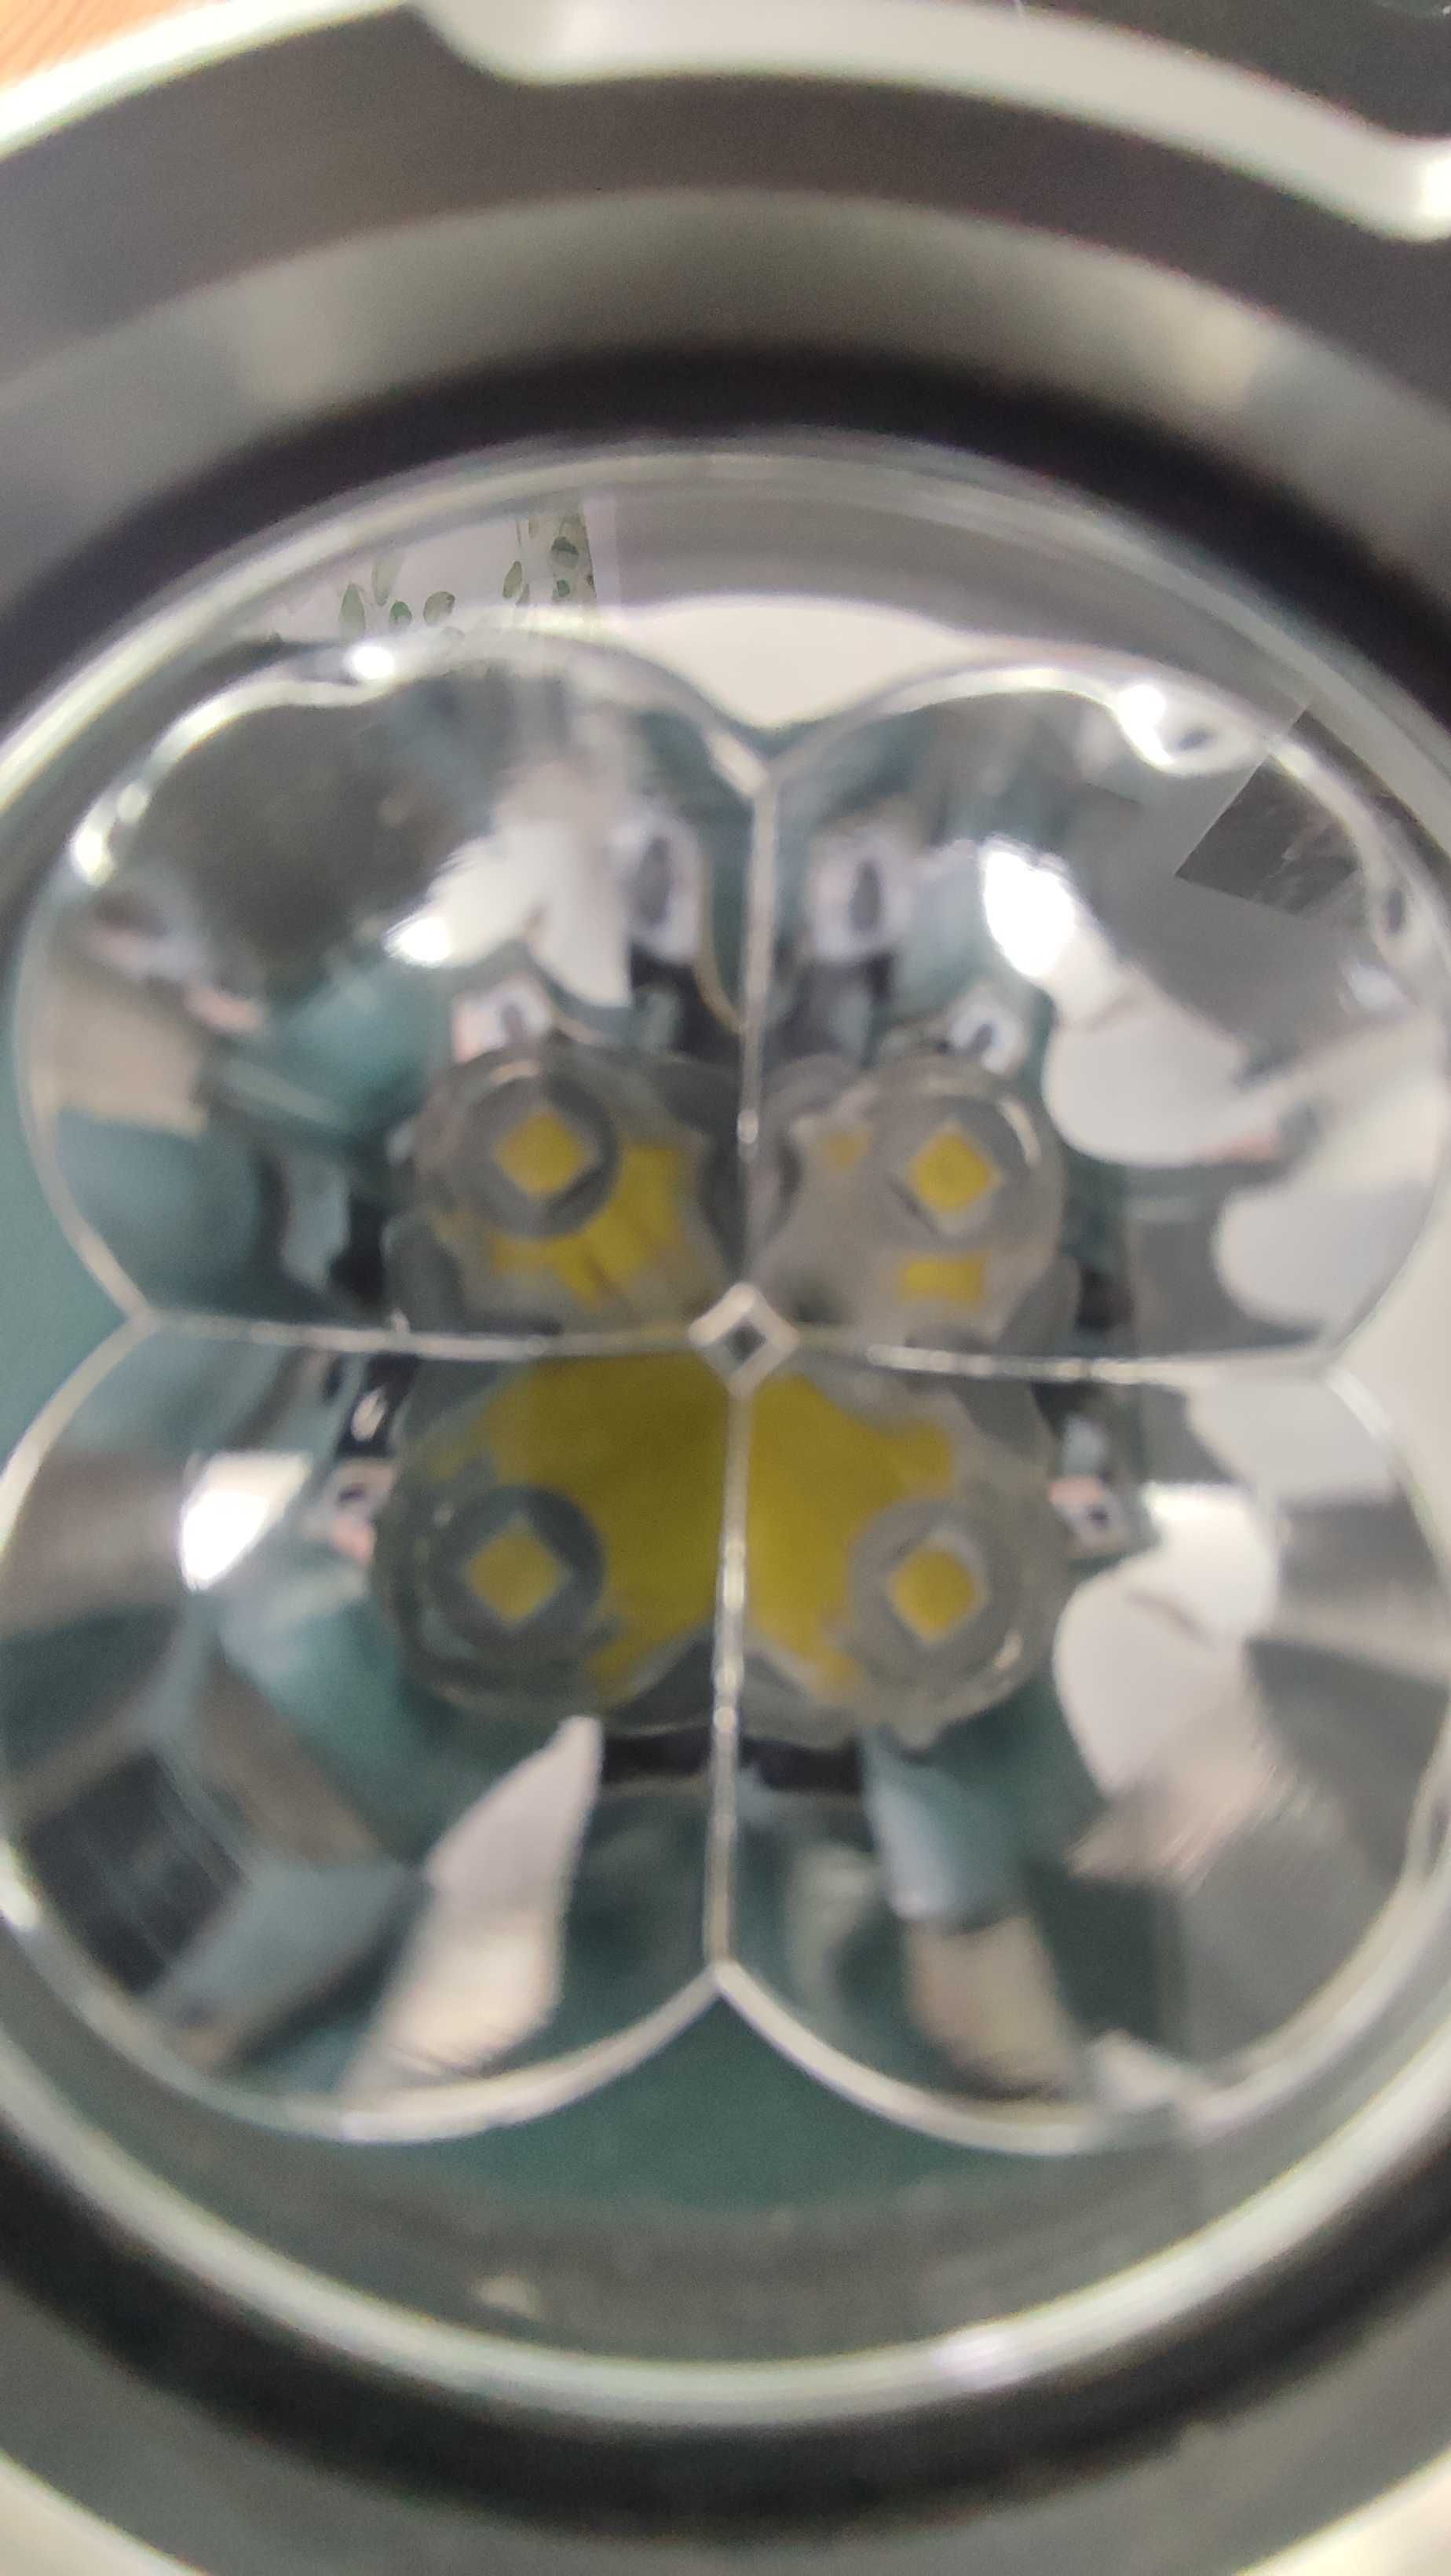 latarka BLF Q8 - na 4 ogniwa 18650 - 230 zł używana pare razy w domu